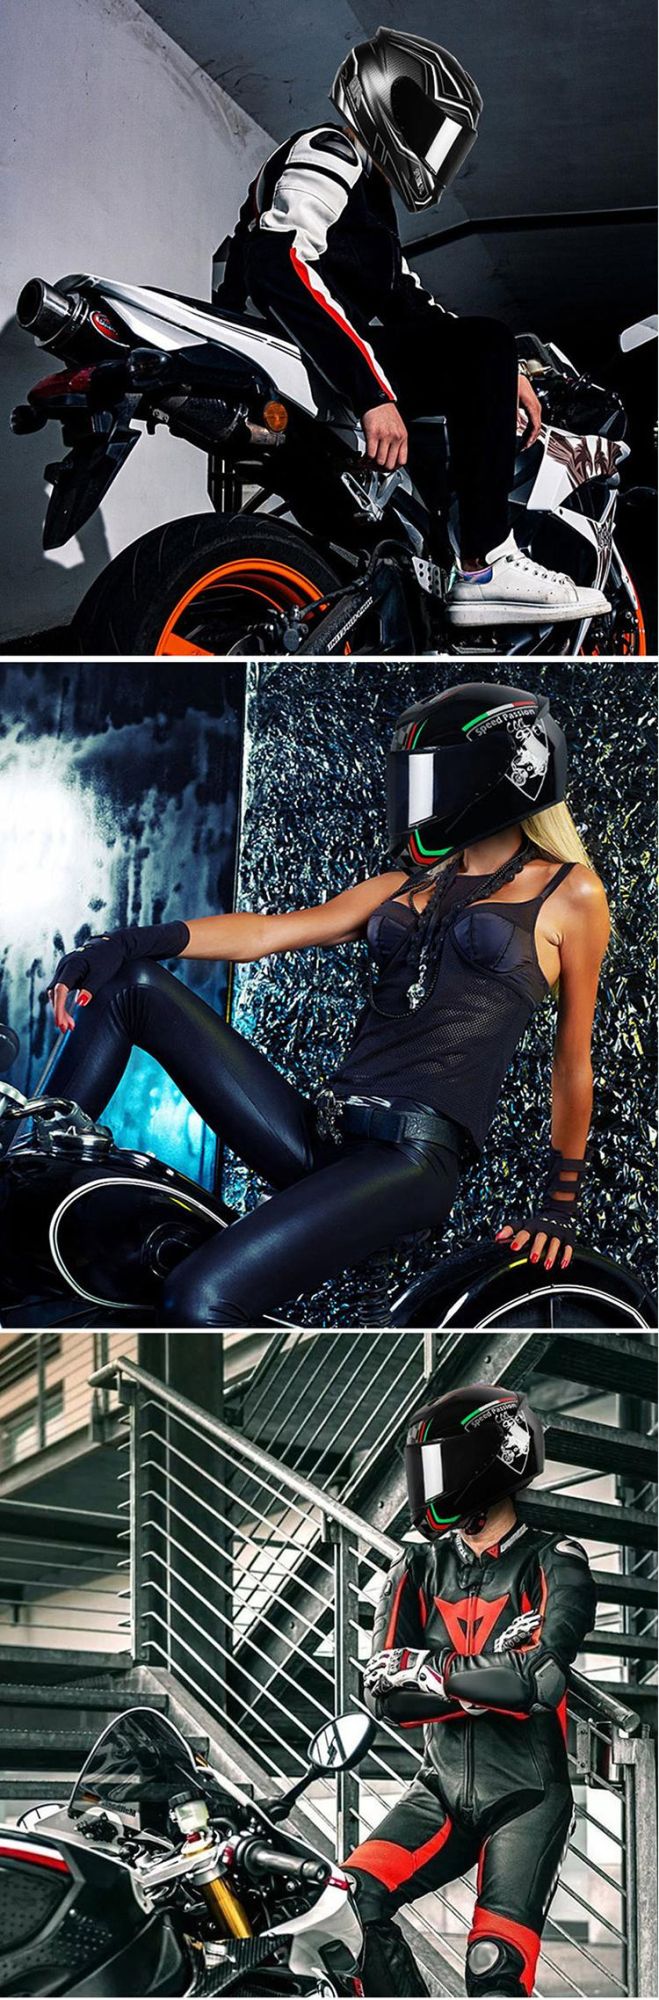 DOT Cool Black Motorcycle Helmet Full Face Motorcycle Helmets